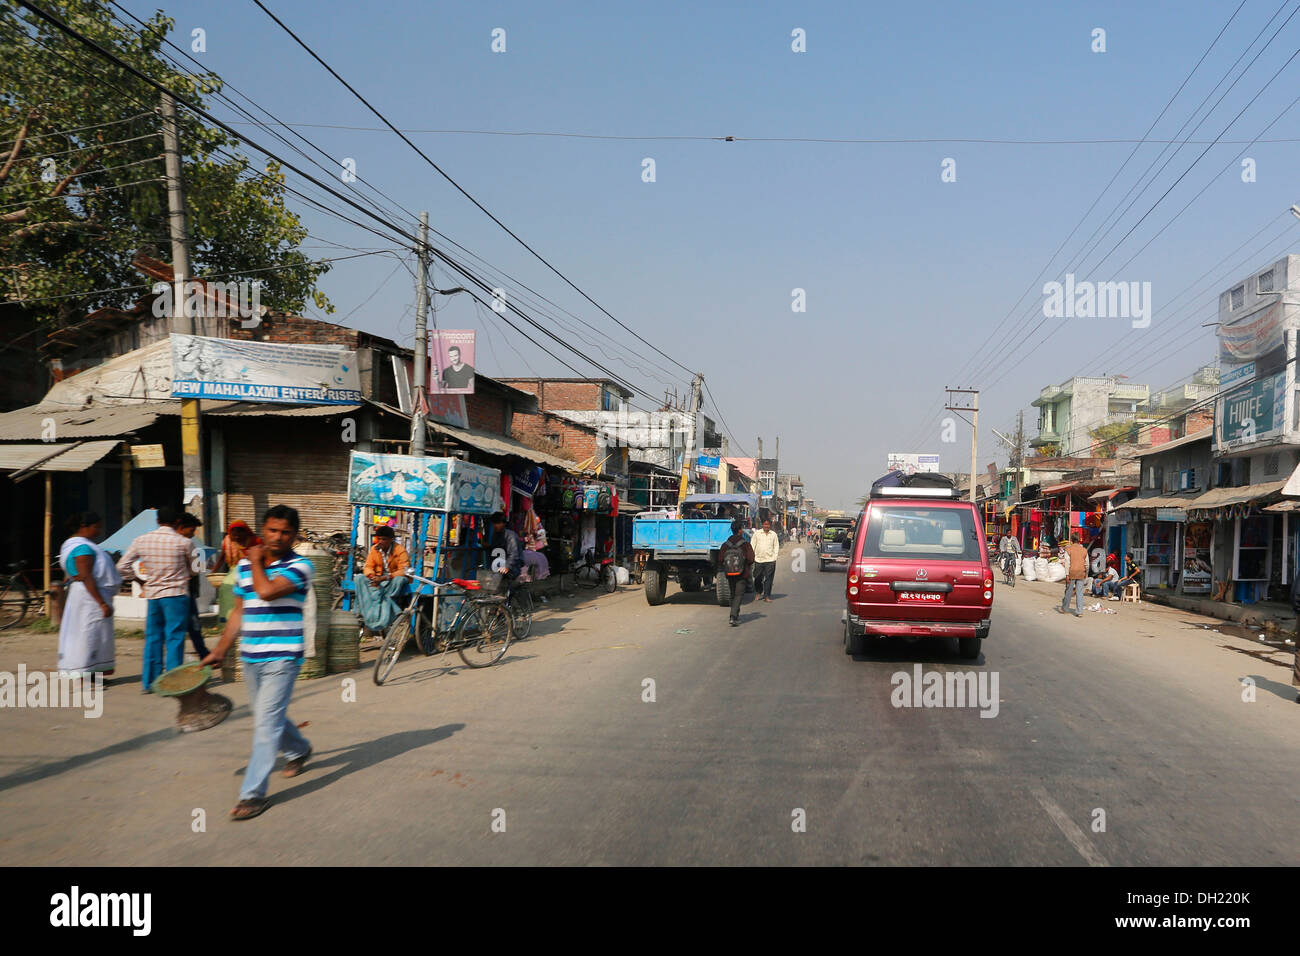 Voyage en voiture à travers la ville de Biratnagar, région du Teraï, Népal, Asie Banque D'Images